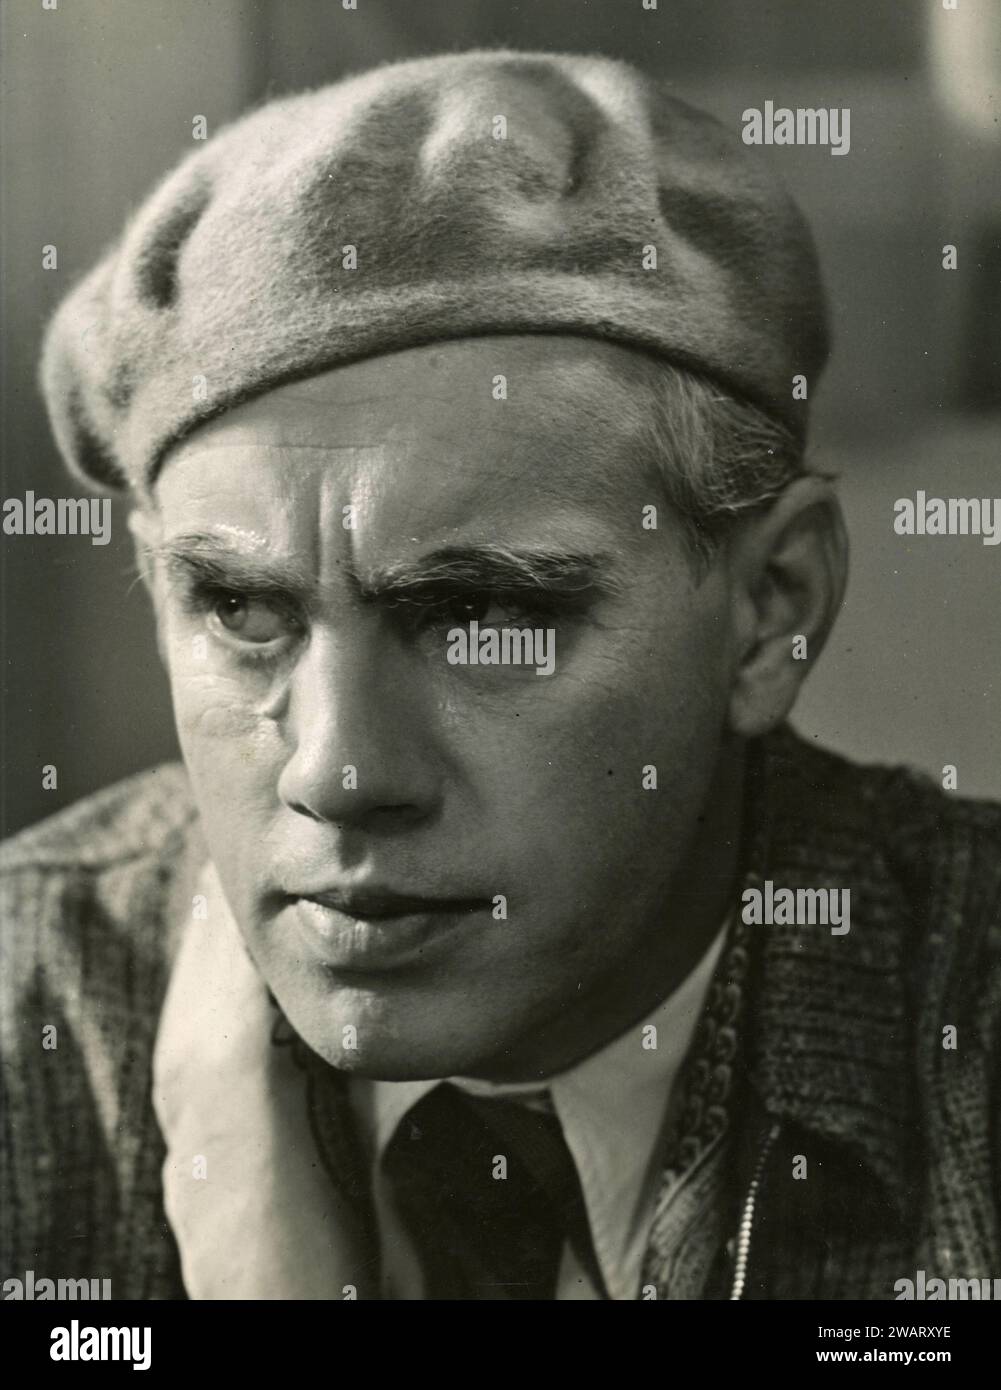 Acteur danois Peter Malberg, Danemark années 1950 Banque D'Images